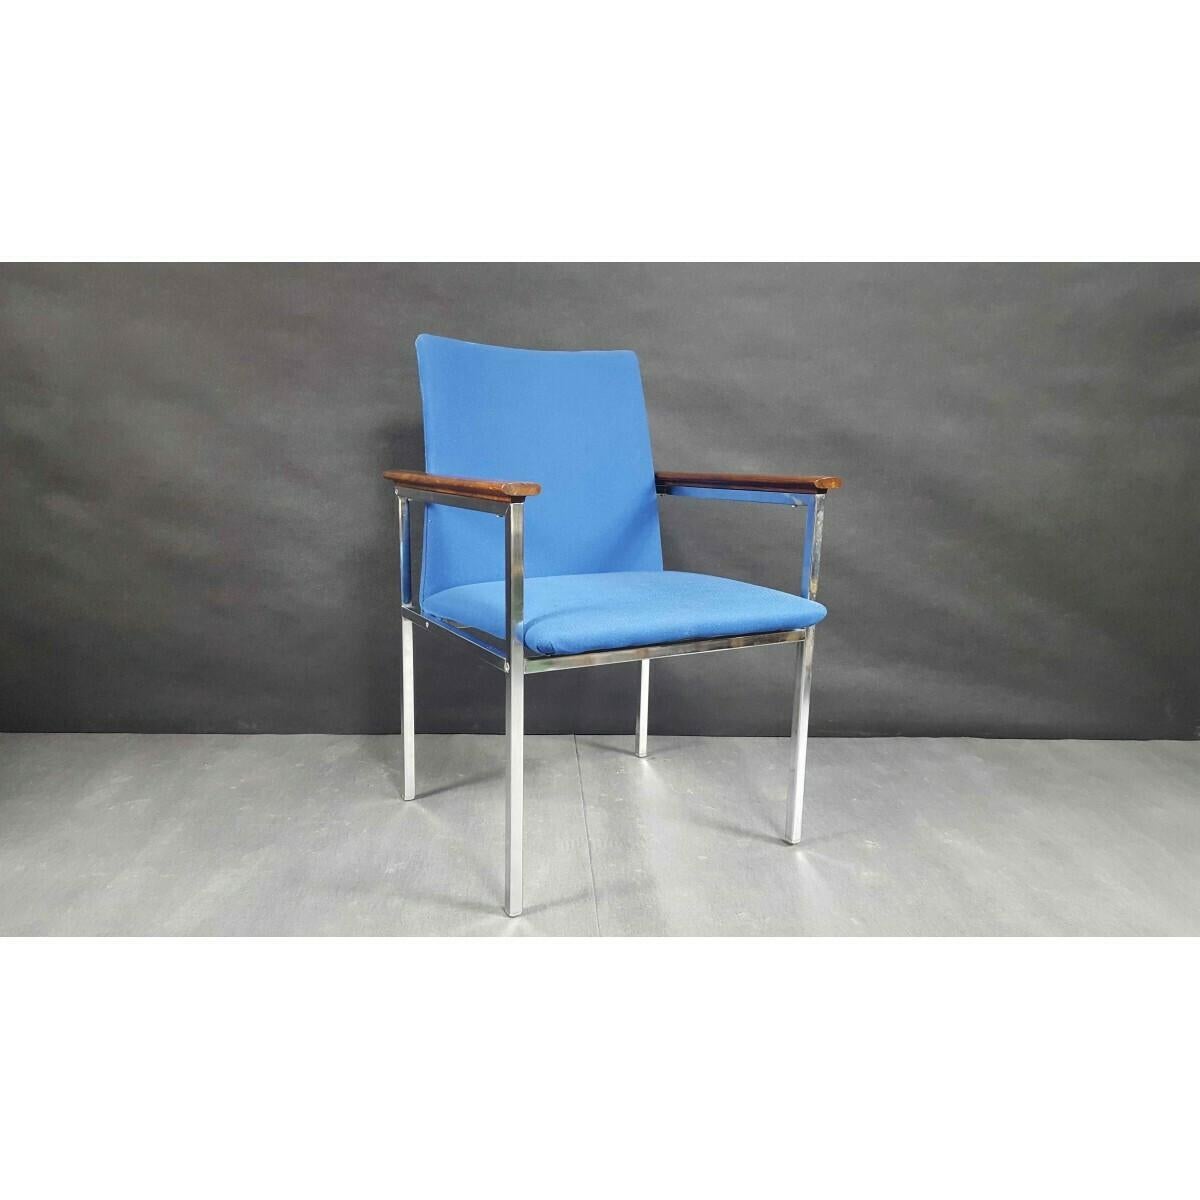 The Modern Scandinavian Mid-Century Modern Sessel. 
Entworfen vom renommierten schwedischen Designer Sigvard Bernadotte und produziert vom dänischen Hersteller France & Son.
Ein verchromtes Stahlgestell mit Armlehnen aus Holz.
Der Sessel wird für